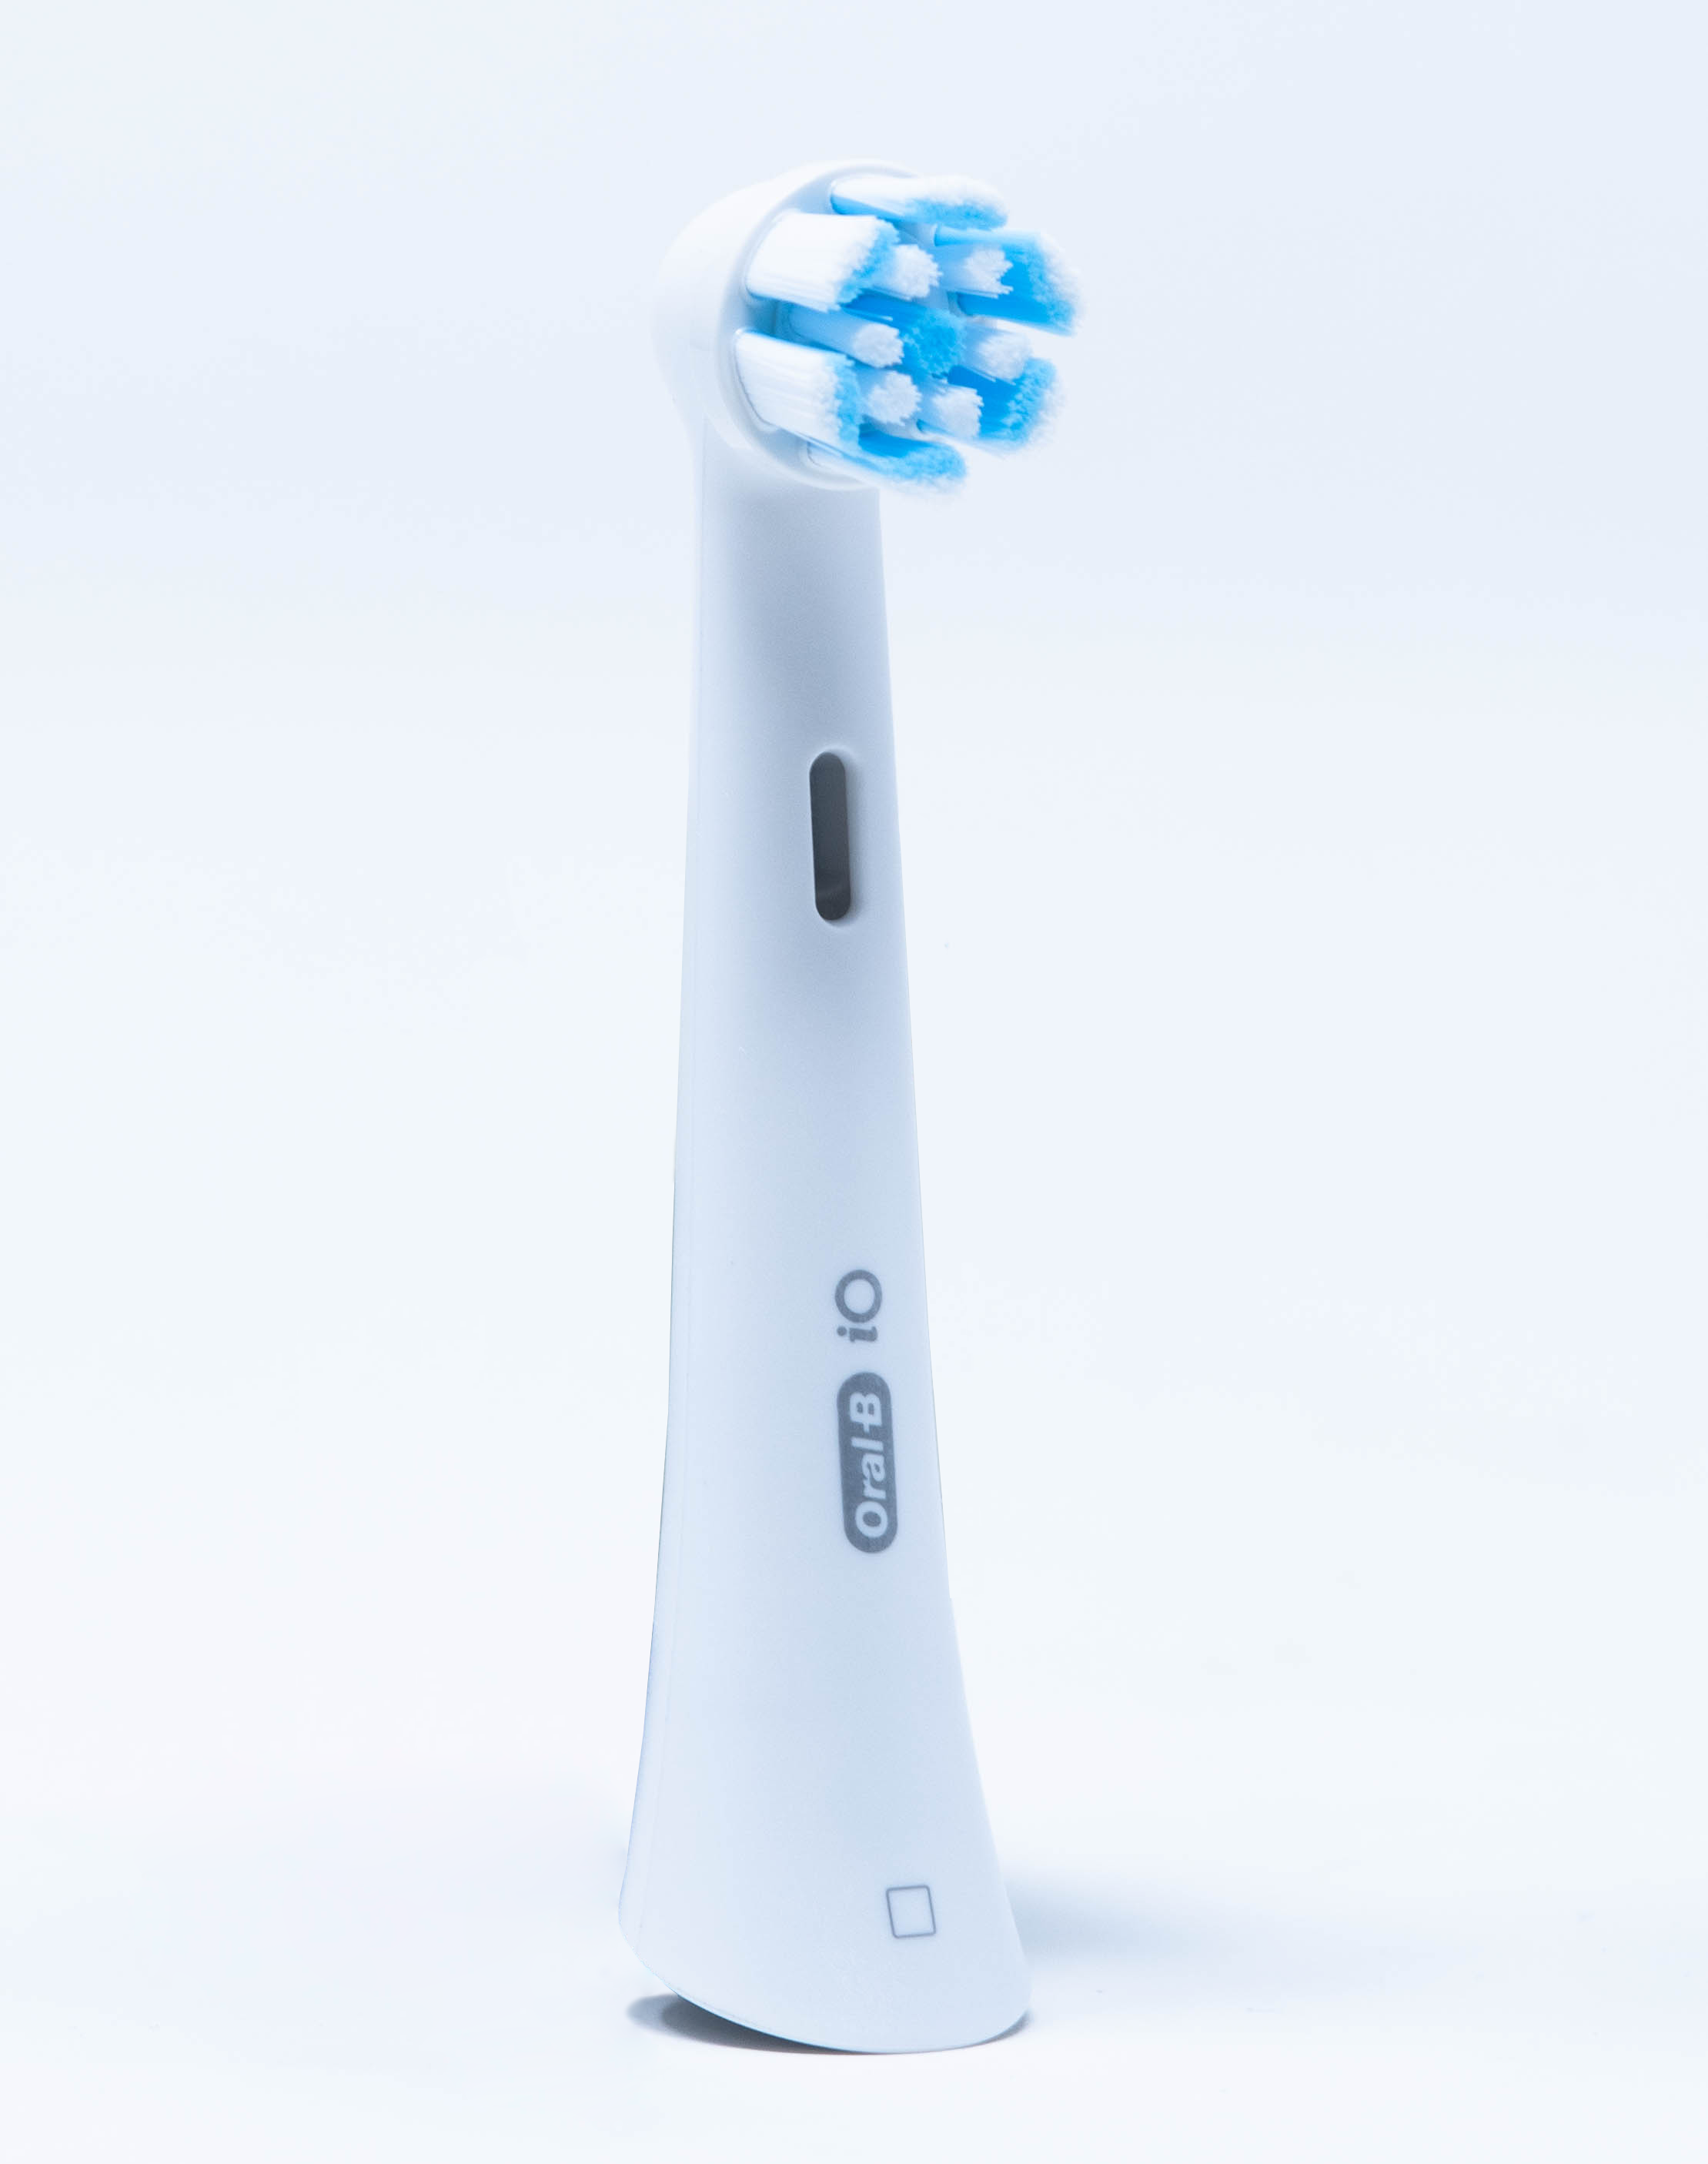 OralB Testina di Ricambio iO Gentle Care - 2 pz